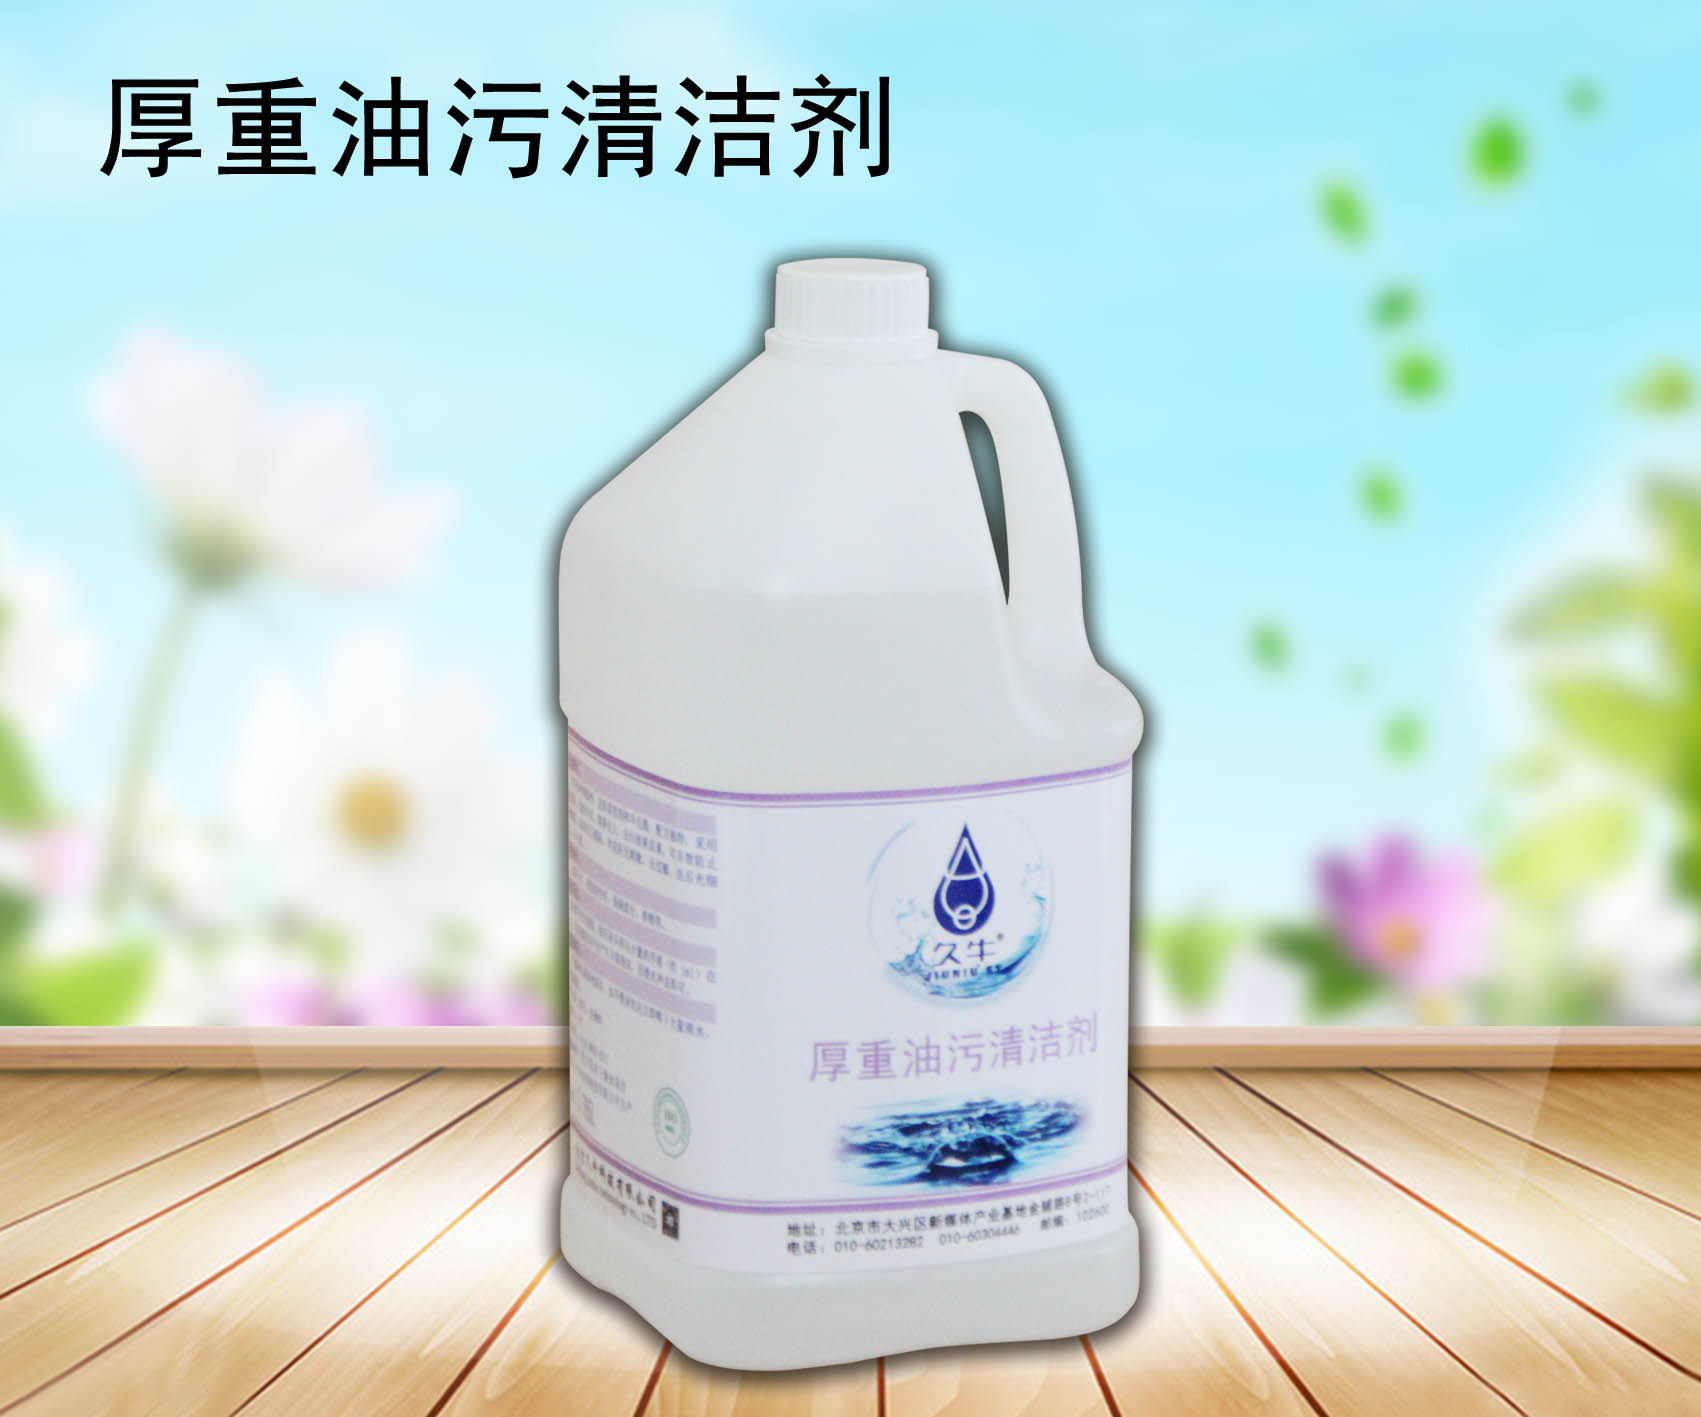 厂家批发去油剂重油污清洗剂北京久科技有限公司 厚重油污清洗剂图片